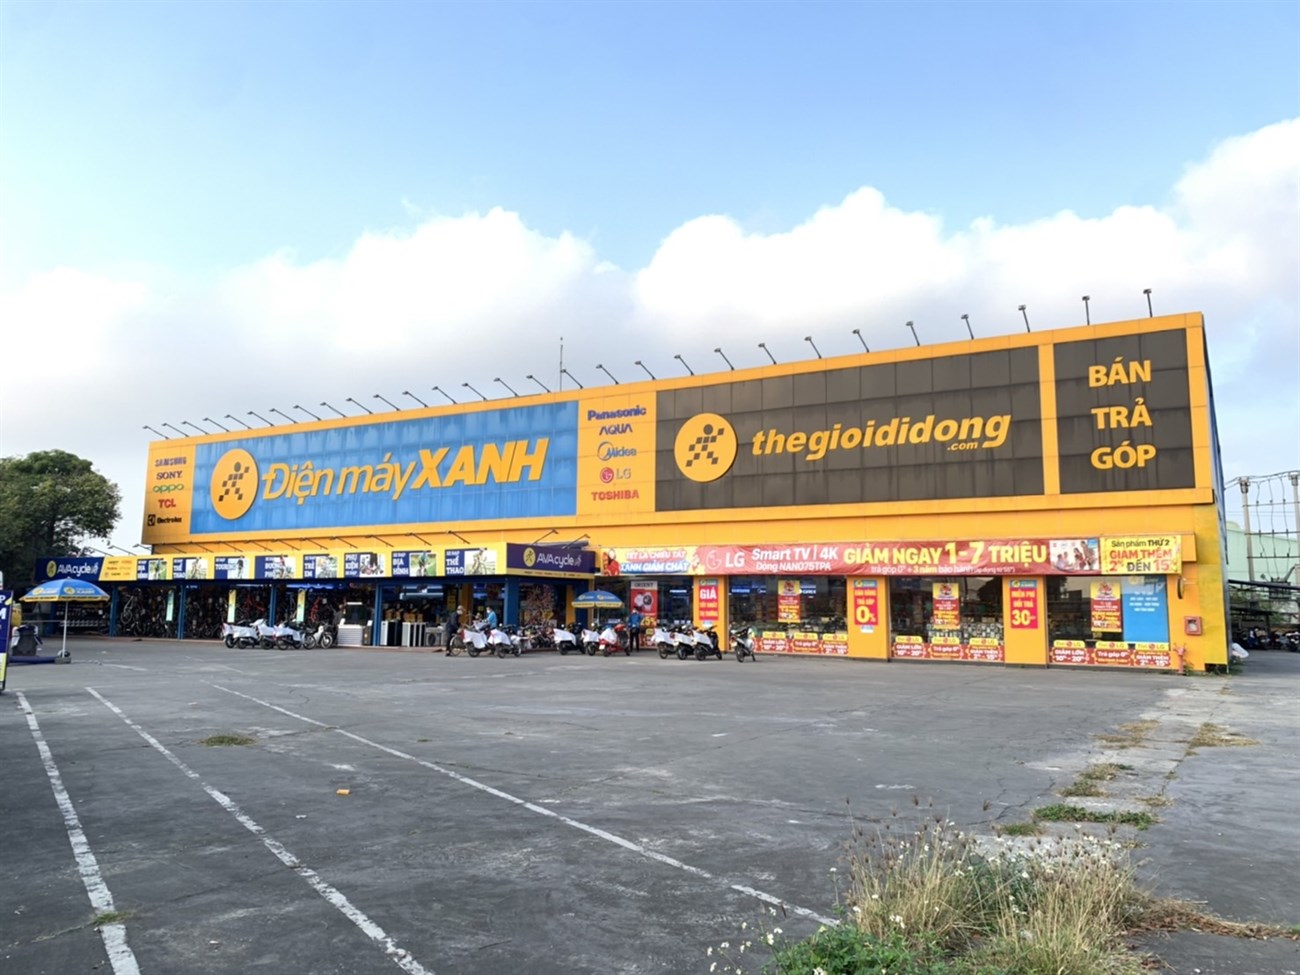 Điện máy XANH 107 Quốc Lộ 19 tại TP. Nam Định , Nam Định thông tin địa chỉ, số điện thoại